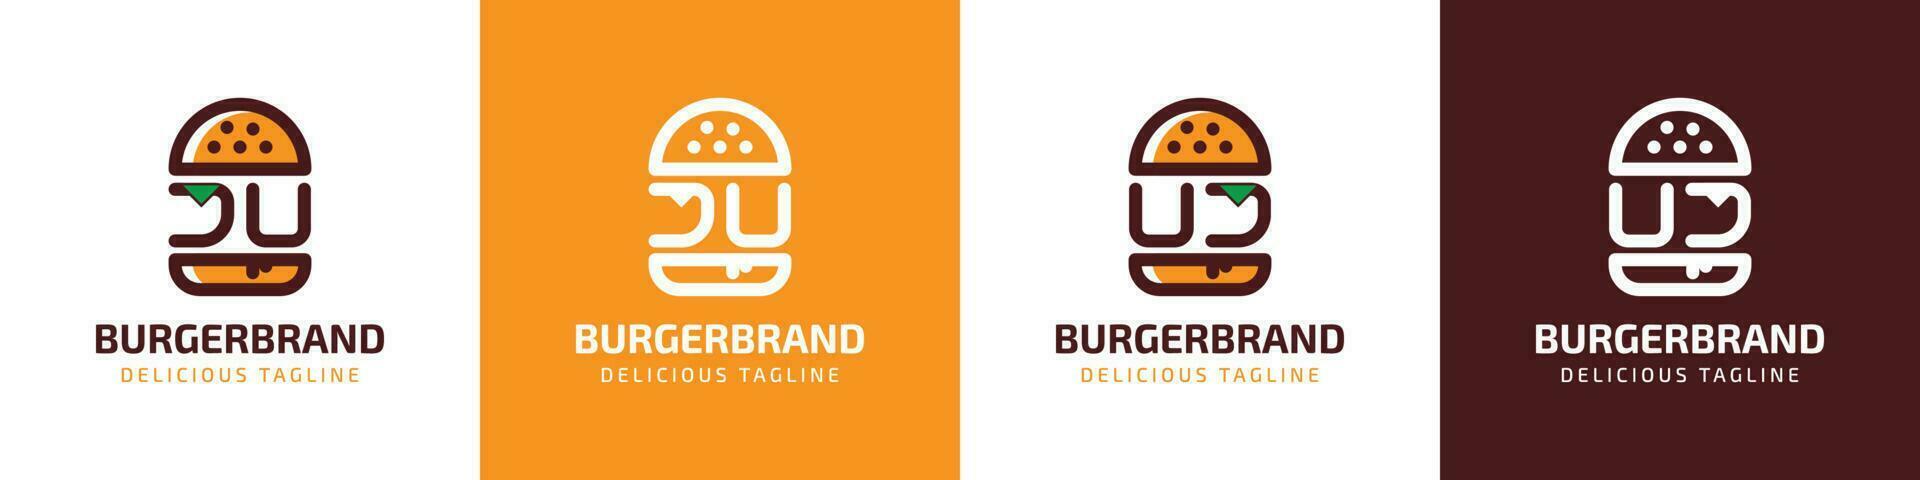 carta ju e uj hamburguer logotipo, adequado para qualquer o negócio relacionado para hamburguer com ju ou uj iniciais. vetor